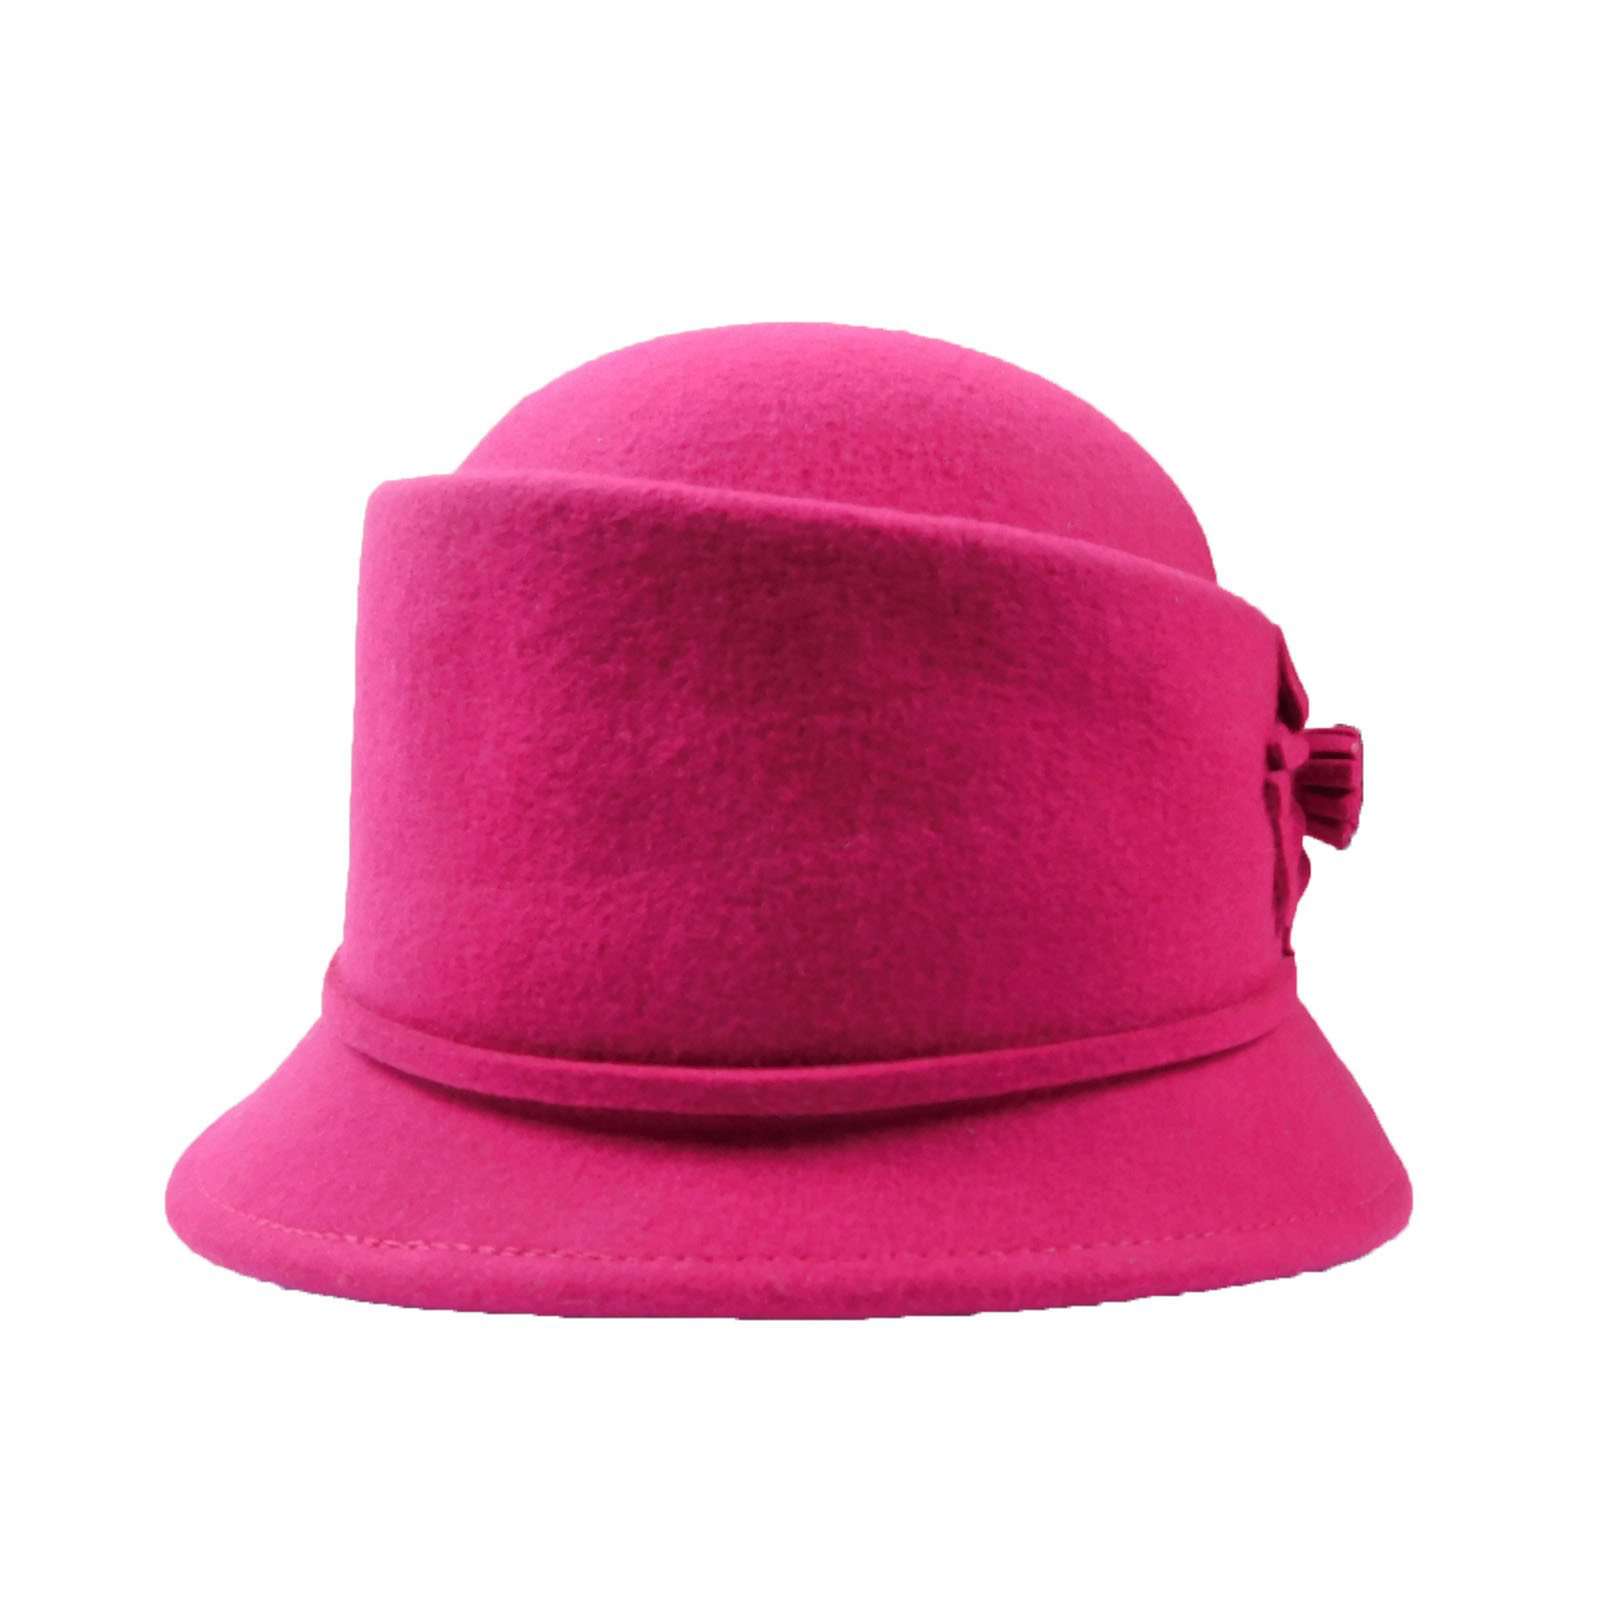 Structured Cloche-Fuchsia, Cloche - SetarTrading Hats 